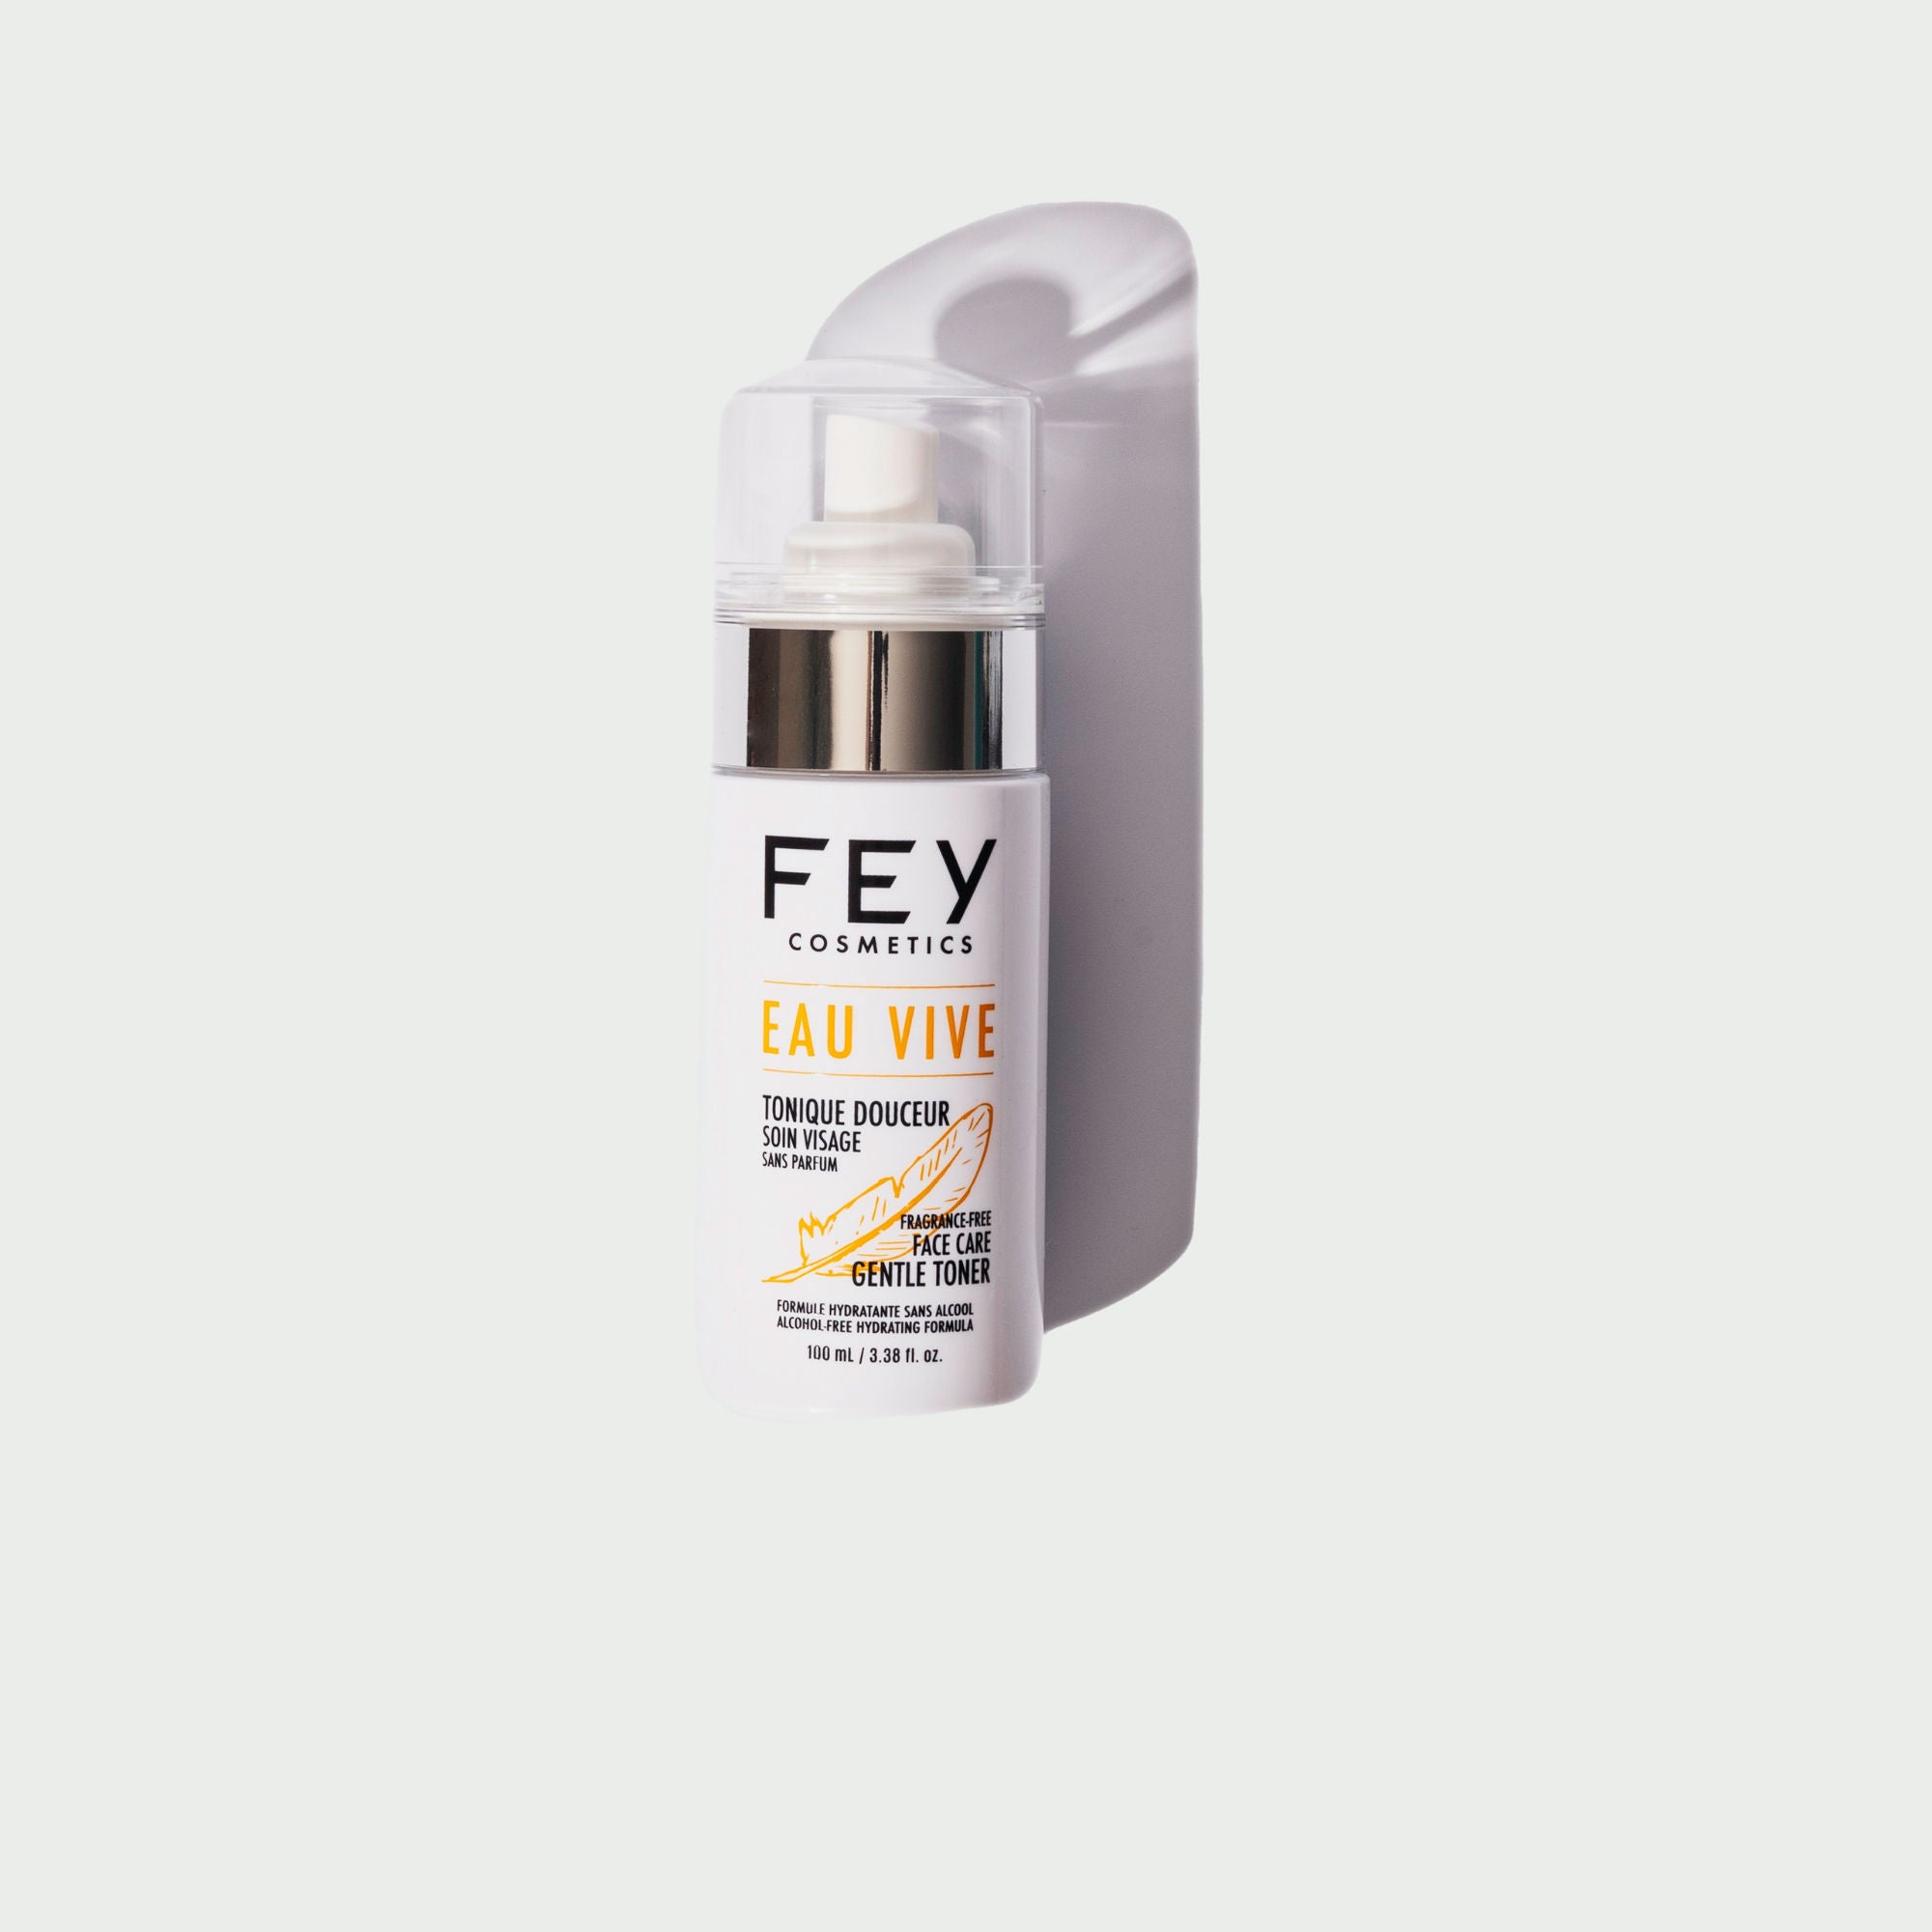 EAU VIVE Best Gentle Facial Hydrating Toner | FEY Cosmetics | EAU VIVE La meilleure lotion tonique hydratante douceur - 100 mL